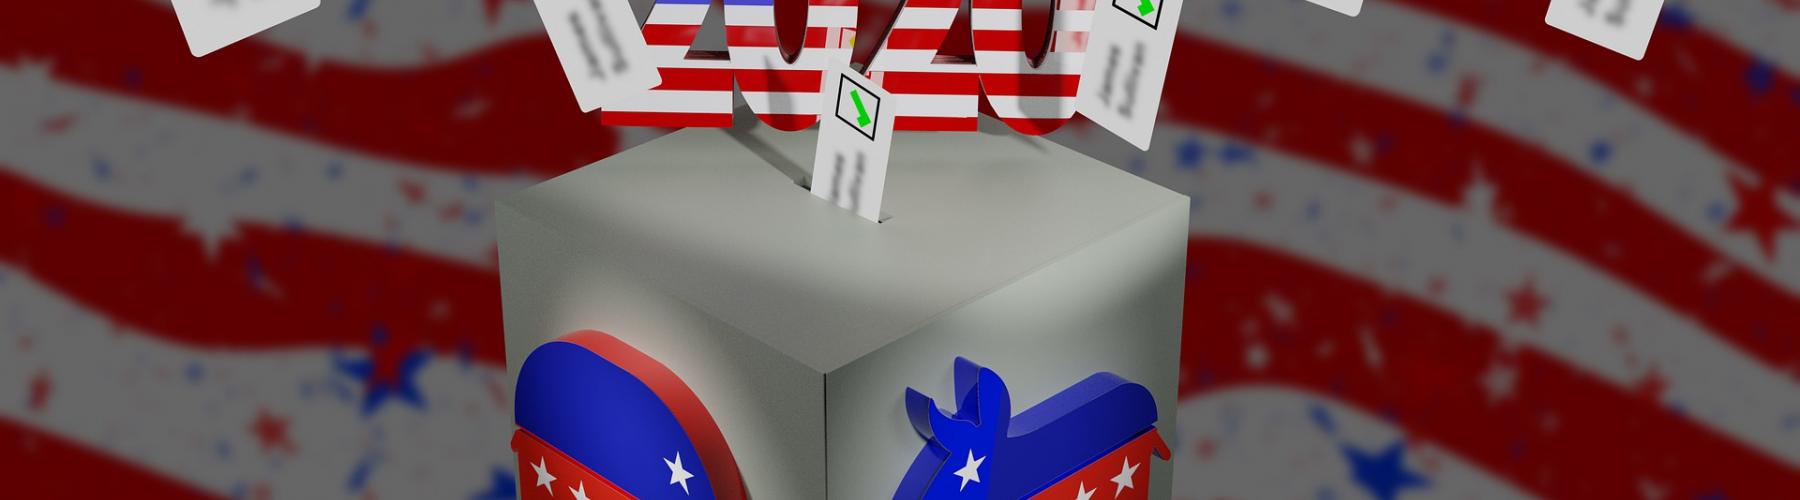 Urne de vote avec bulletins au-dessus et "élection 2020" écrit en majuscule